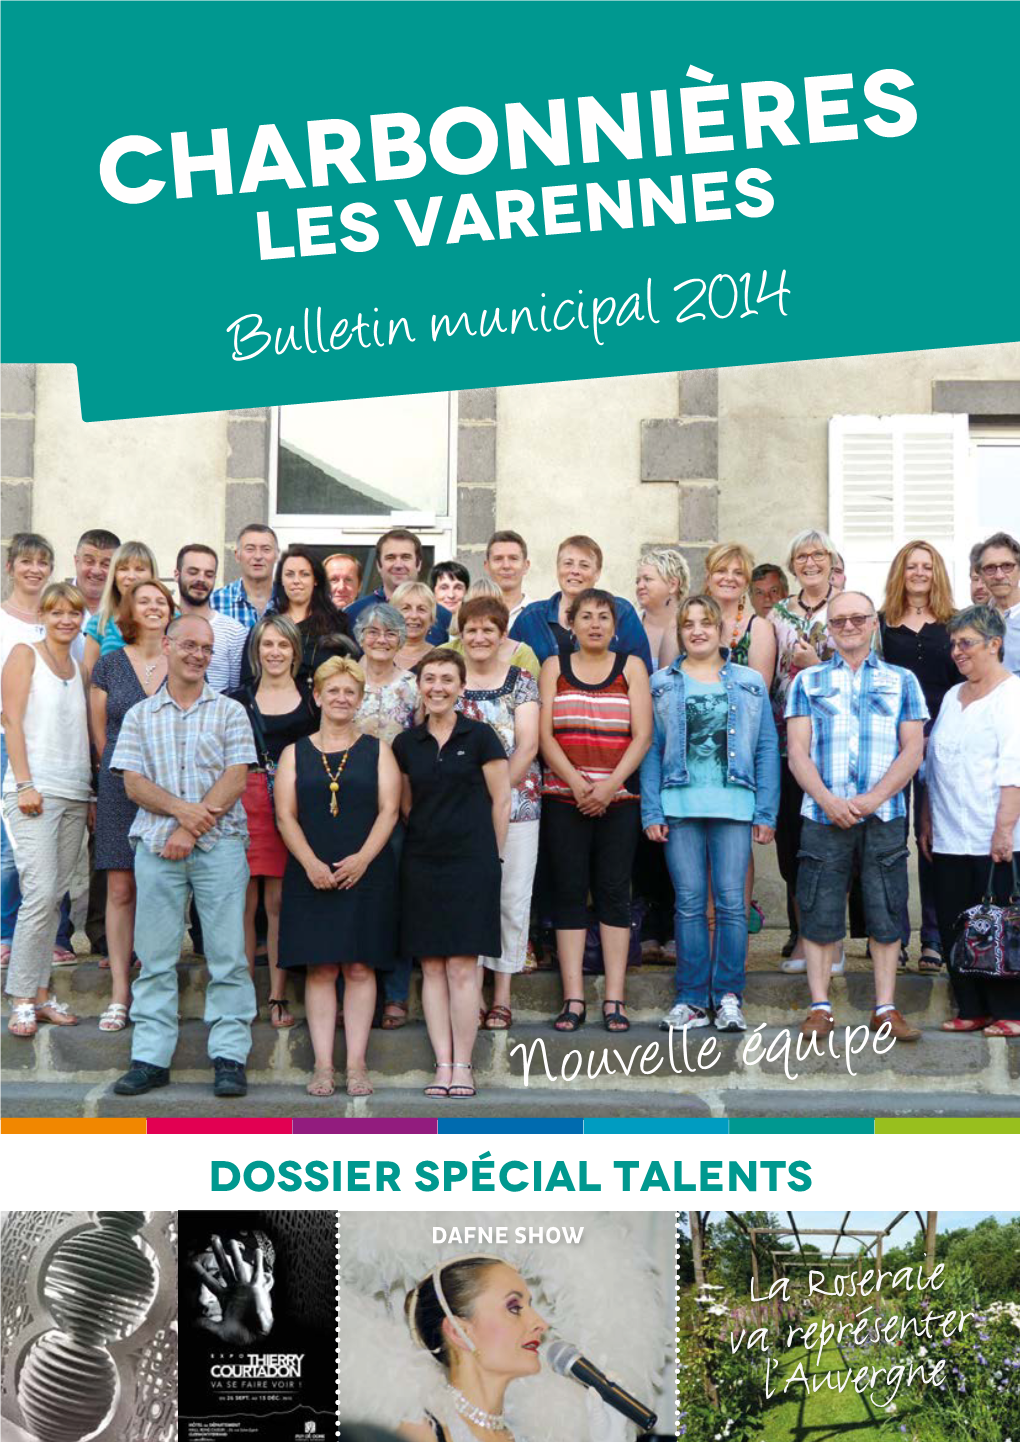 Charbonnières Les Varennes Bulletin Municipal 2014